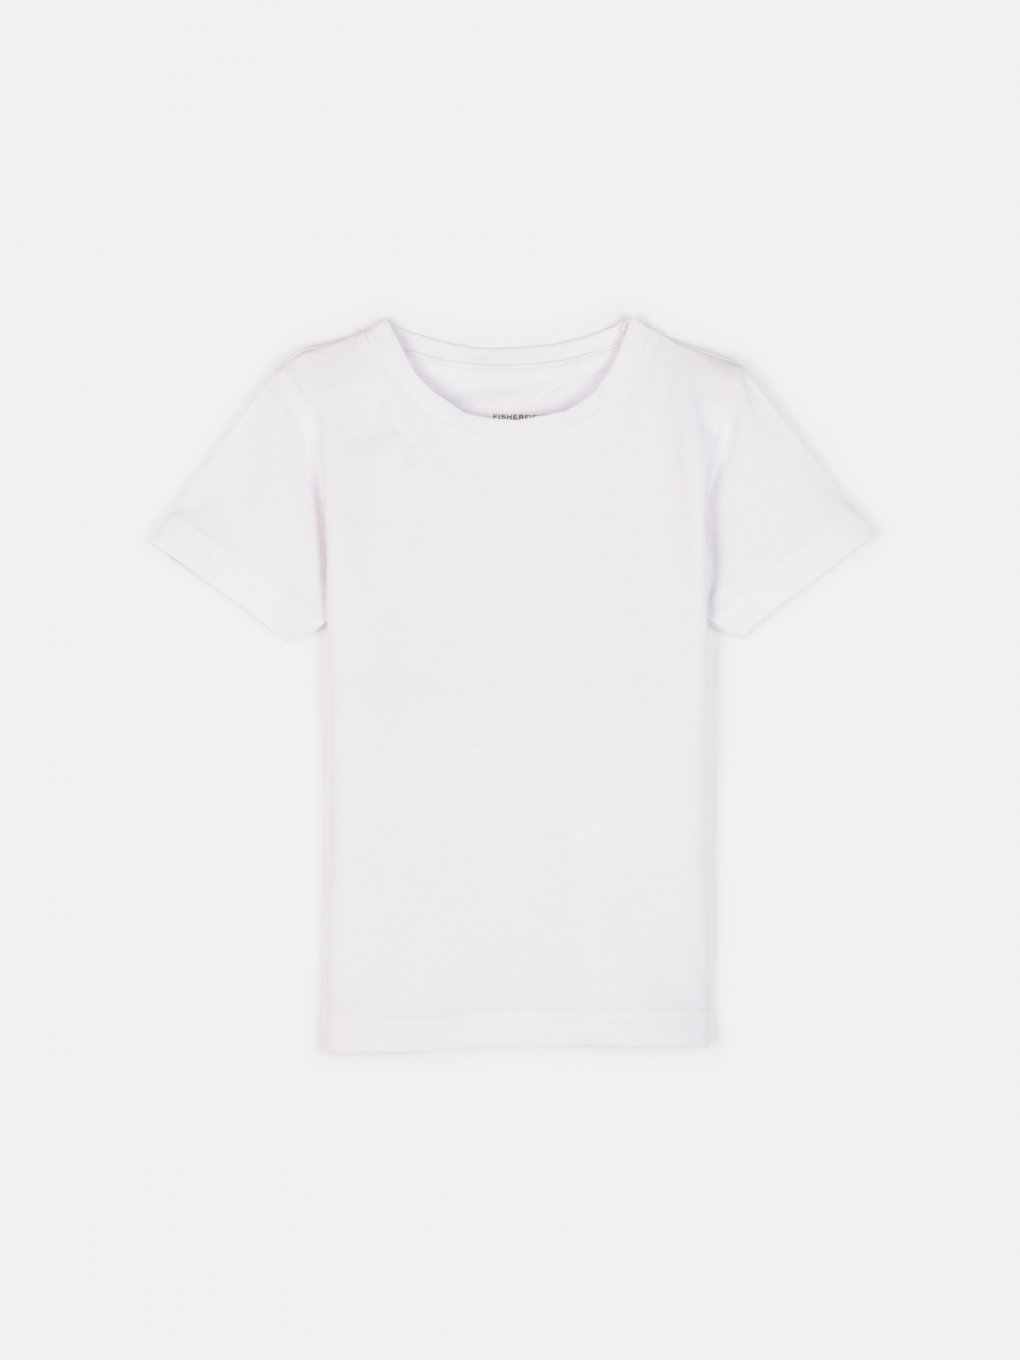 Jednofarebné bavlnené elastické tričko chlapčenské